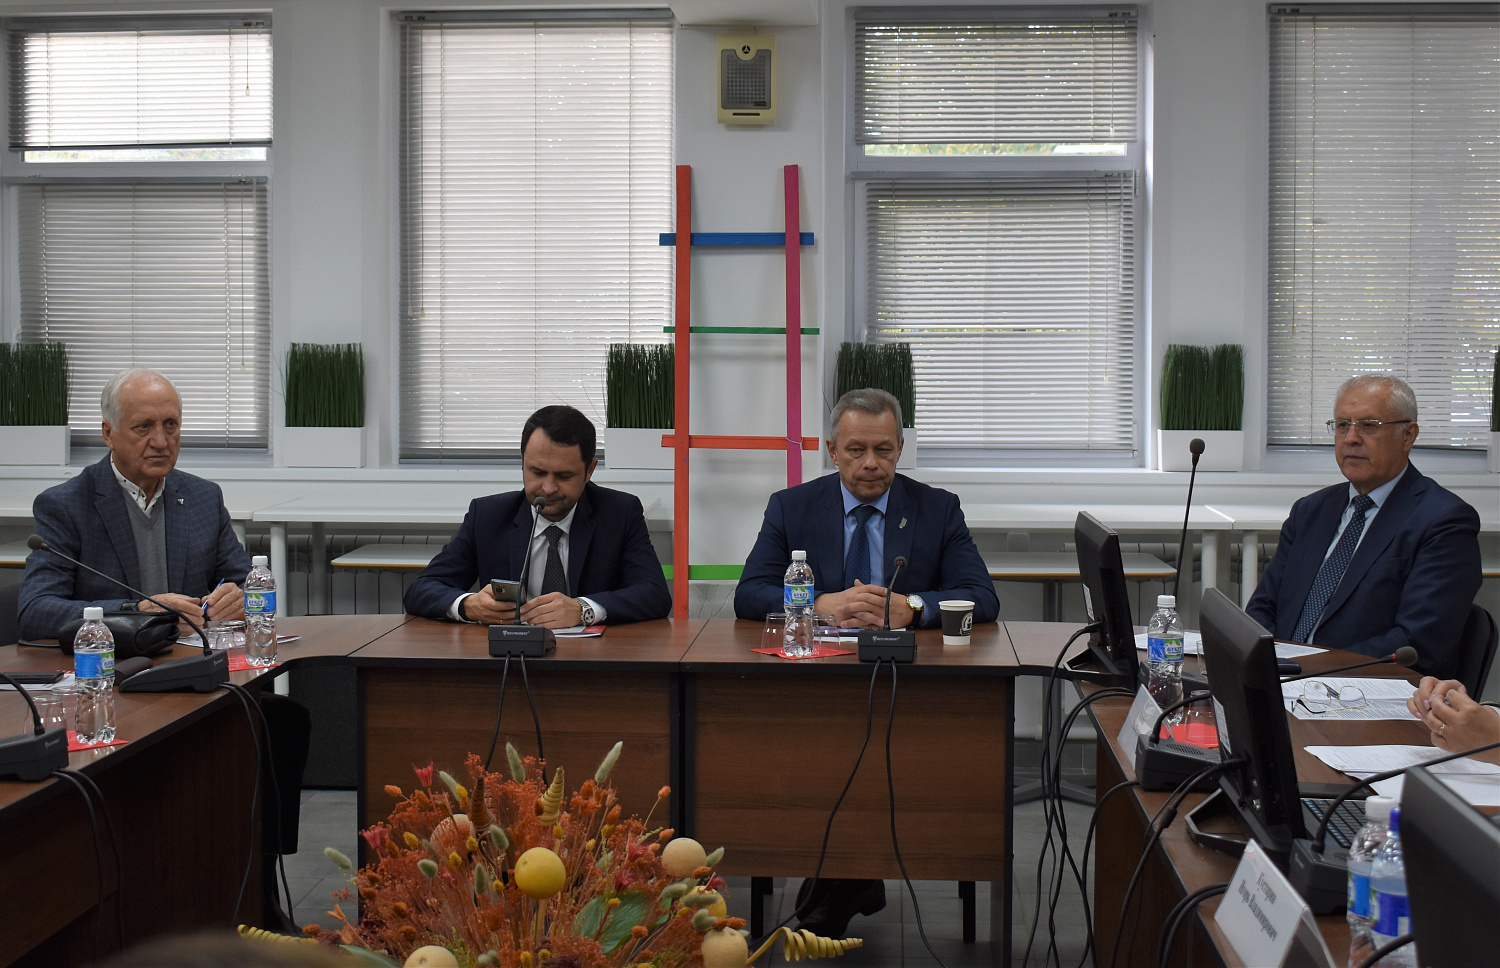 7 октября 2022 г. в ТПП Чувашской Республики состоялось Совместное заседание Совета и Правления Торгово-промышленной палаты Чувашской Республики